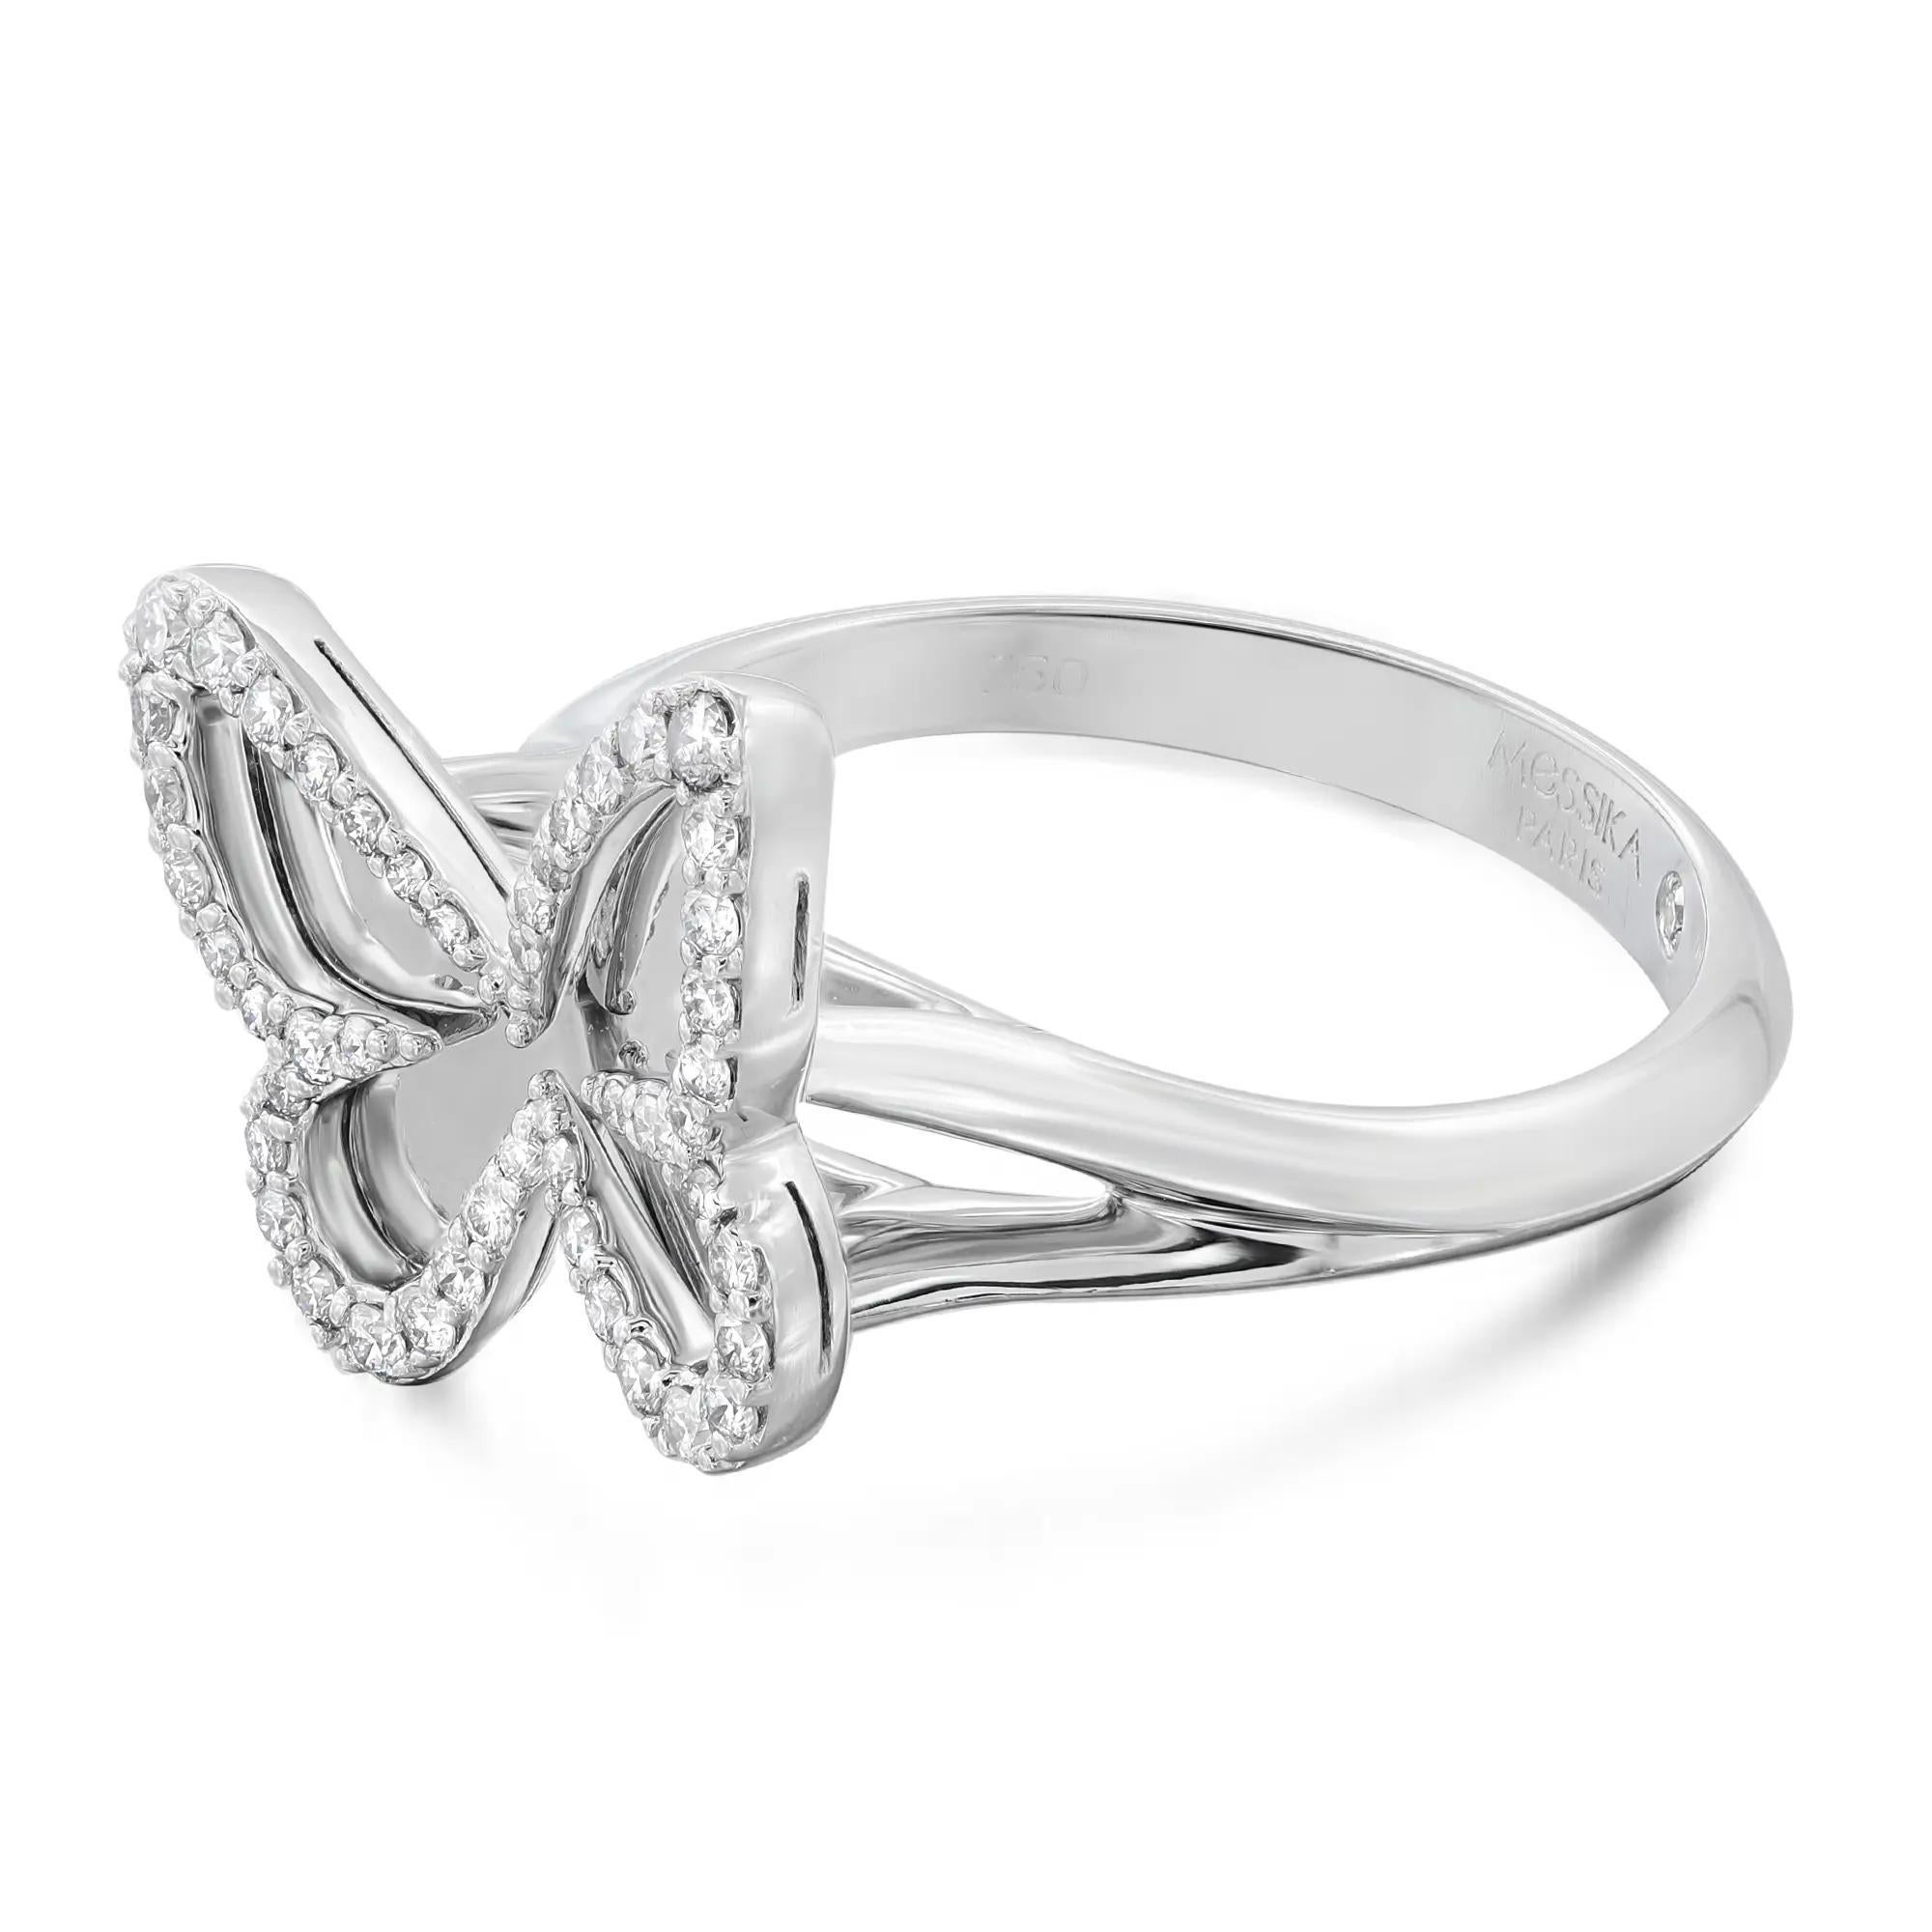 Plaque Butterfly Diamantring von Messika, witzig und schrullig. Dieser wunderschöne Ring ist mit einem Spiegeleffekt versehen und aus glänzendem 18-karätigem Weißgold gefertigt. Geschmückt mit gepflasterten runden Diamanten im Brillantschliff mit